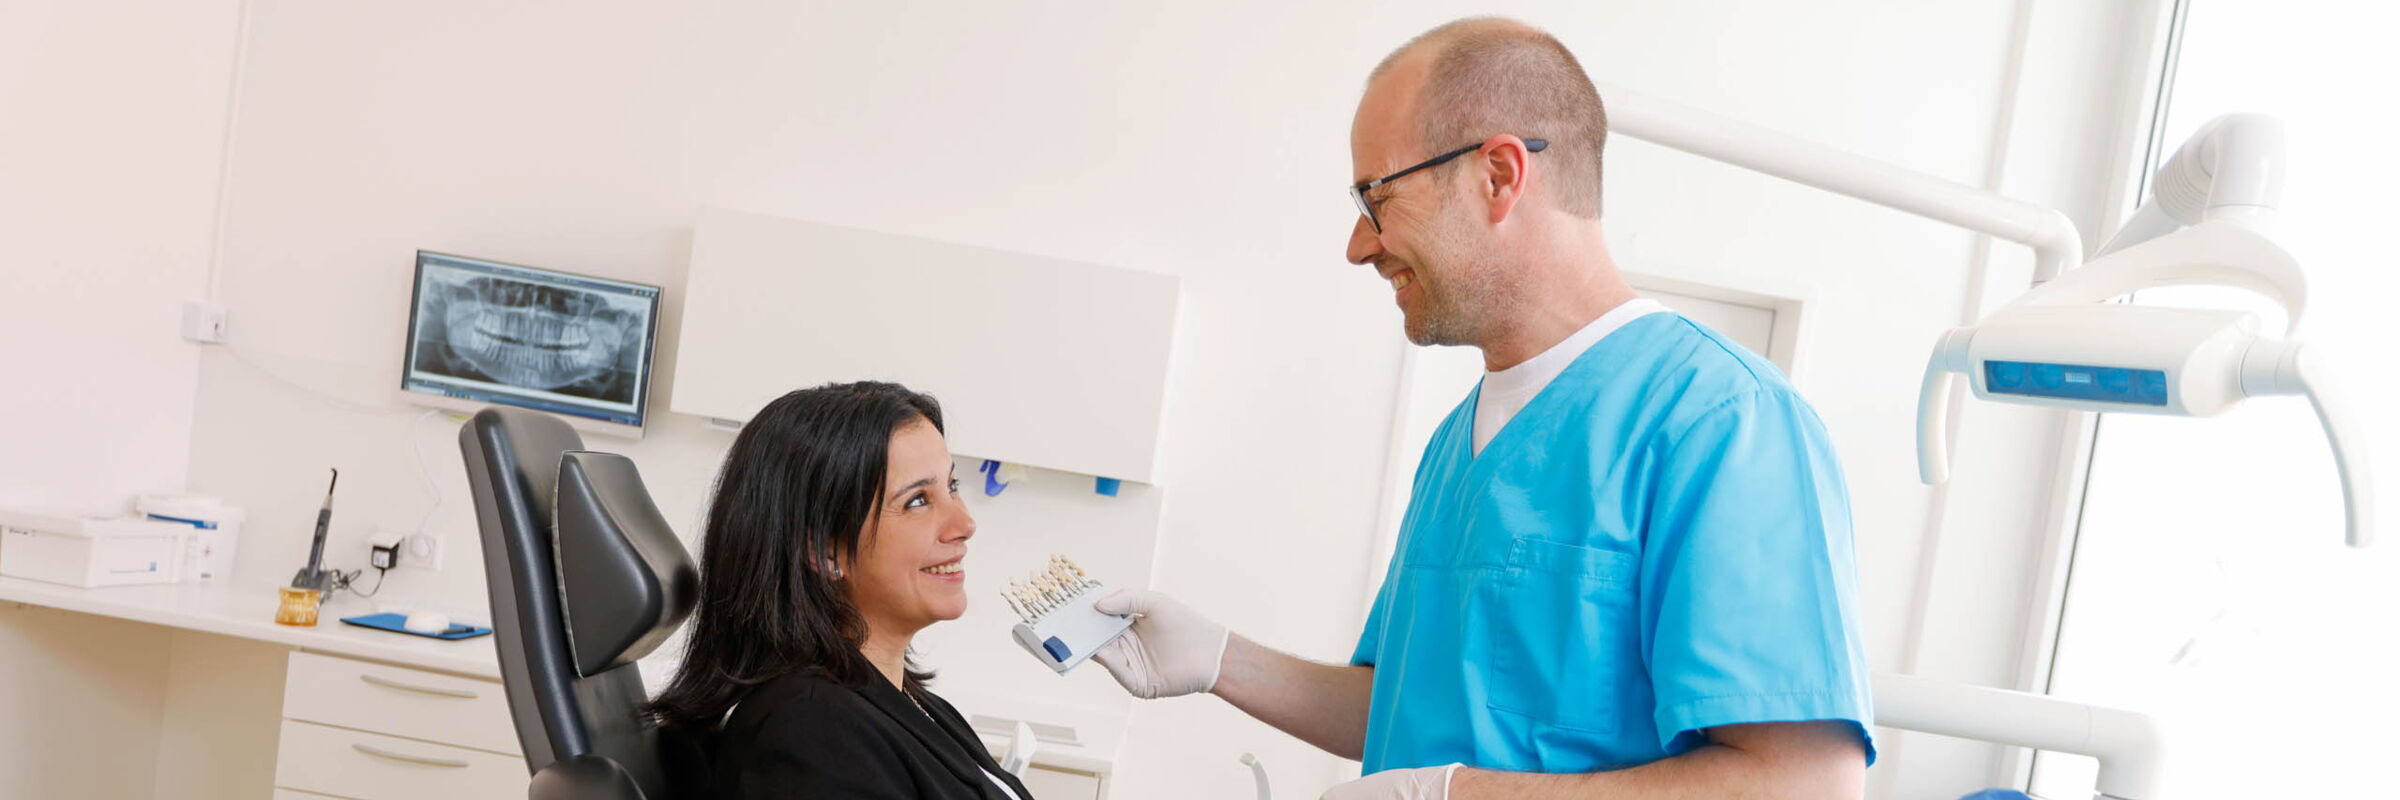 Zahnersatz | Zahnarztpraxis Klenke in Baunatal